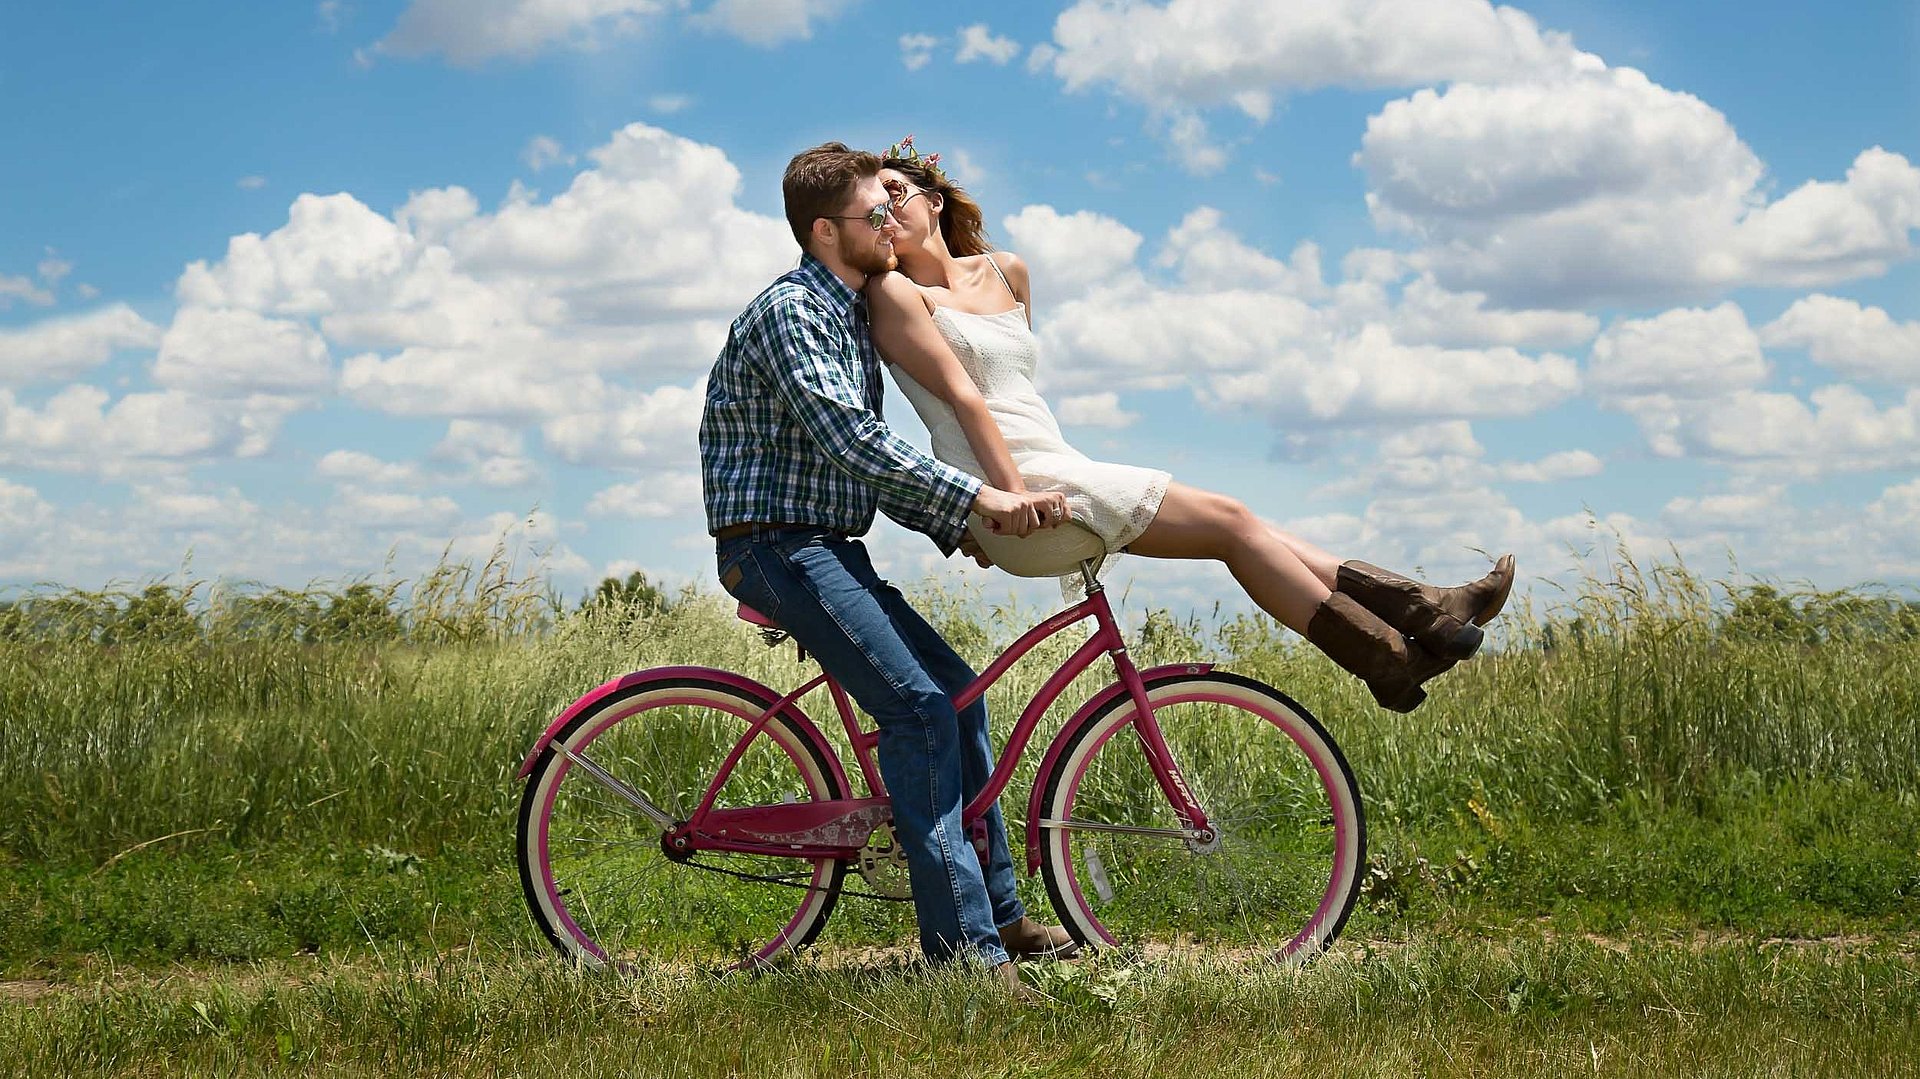 Radfahren und Radwandern in Ostbayern - junger Mann sitzt auf Fahrrad, seine Partnerin ist auf dem vorderen Gepäckträger und küsst ihn; sonniges Wetter auf einem Feld 